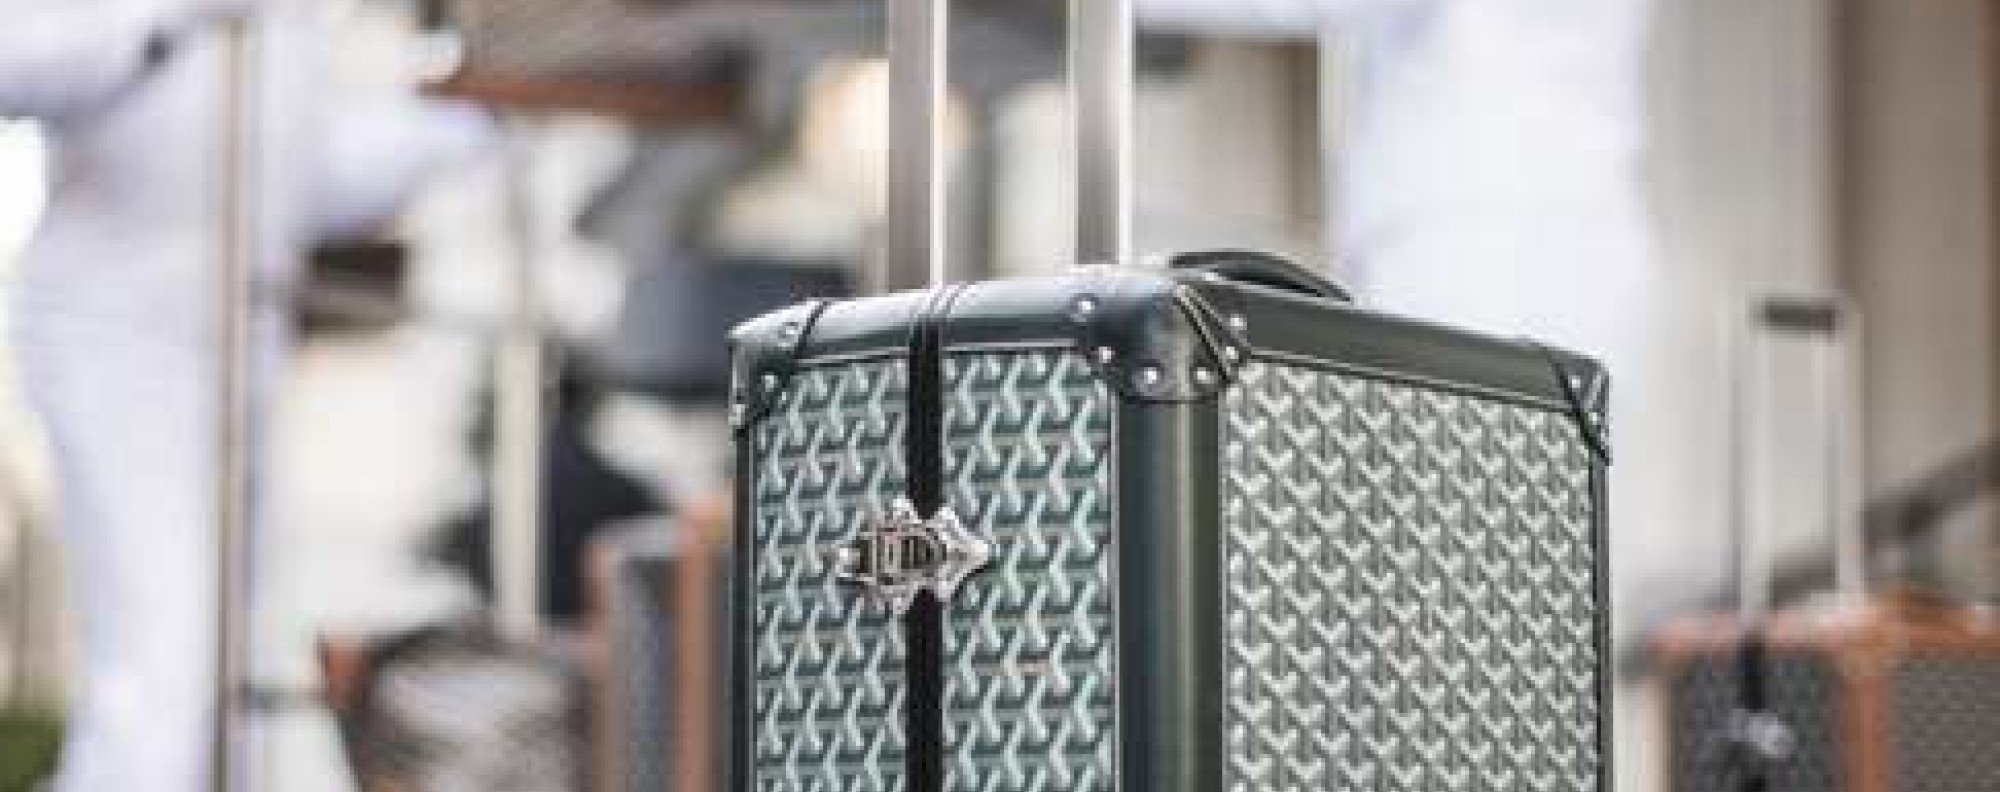 Goyard Bourget Trunk  Goyard trunk, Luxury designer handbags, Goyard